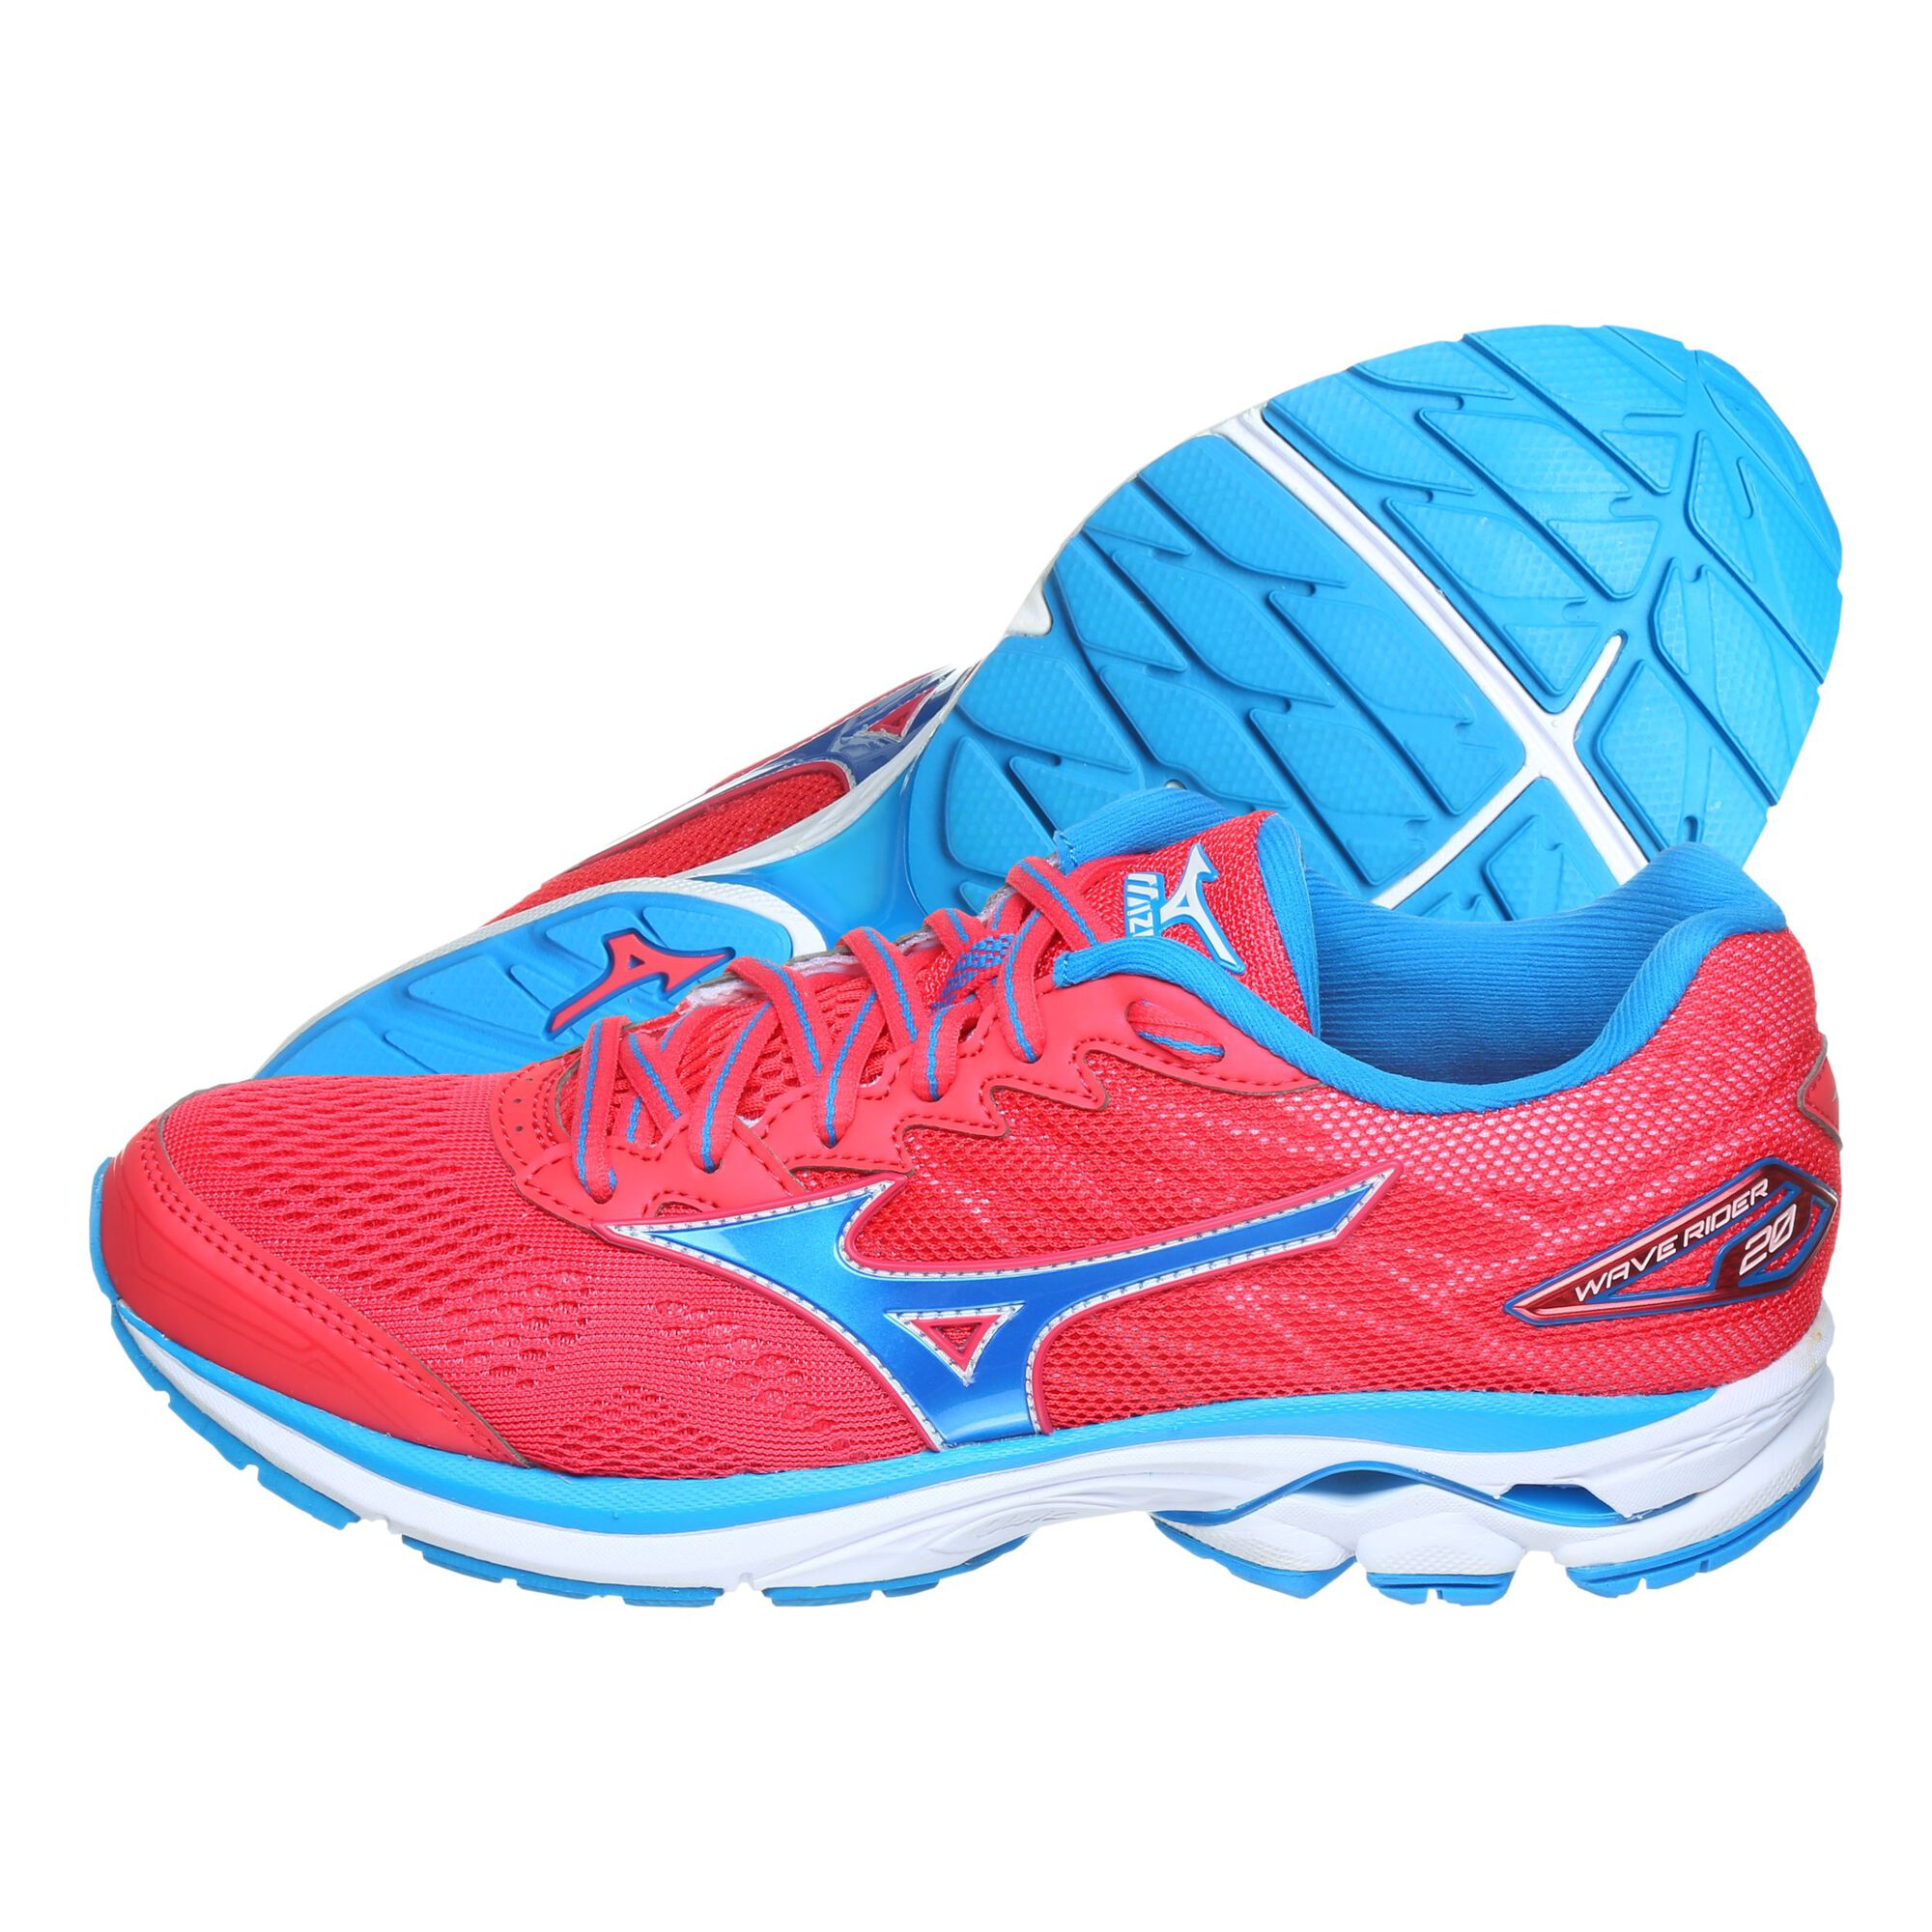 Buy Mizuno Wave Rider Neutral Running Shoe Women Red Blue Online Jogging Point